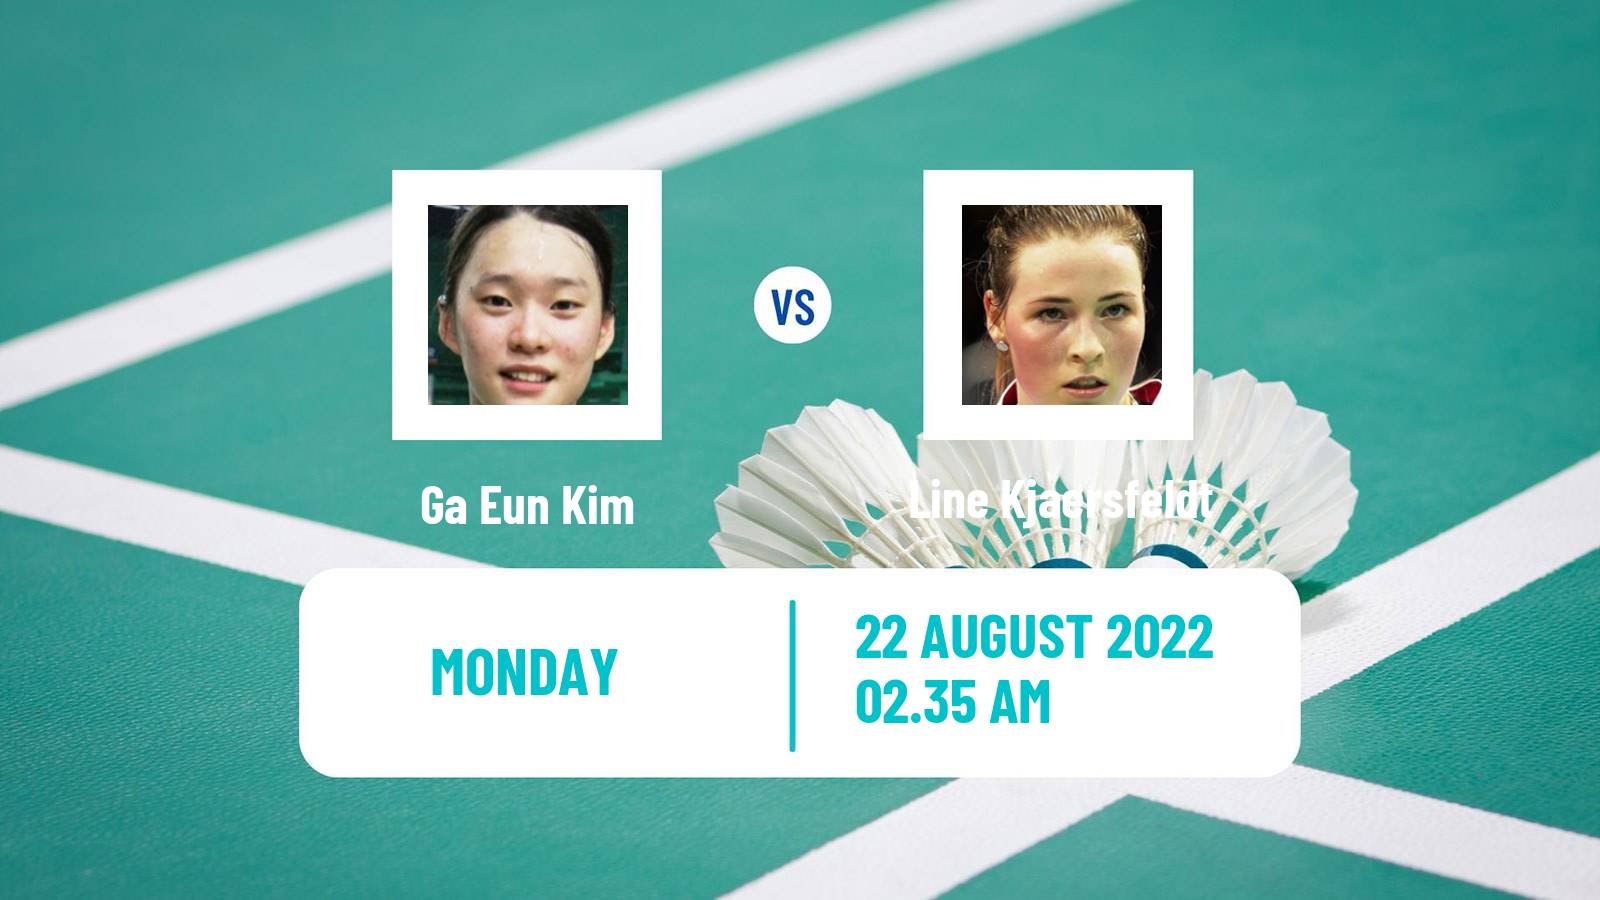 Badminton Badminton Ga Eun Kim - Line Kjaersfeldt